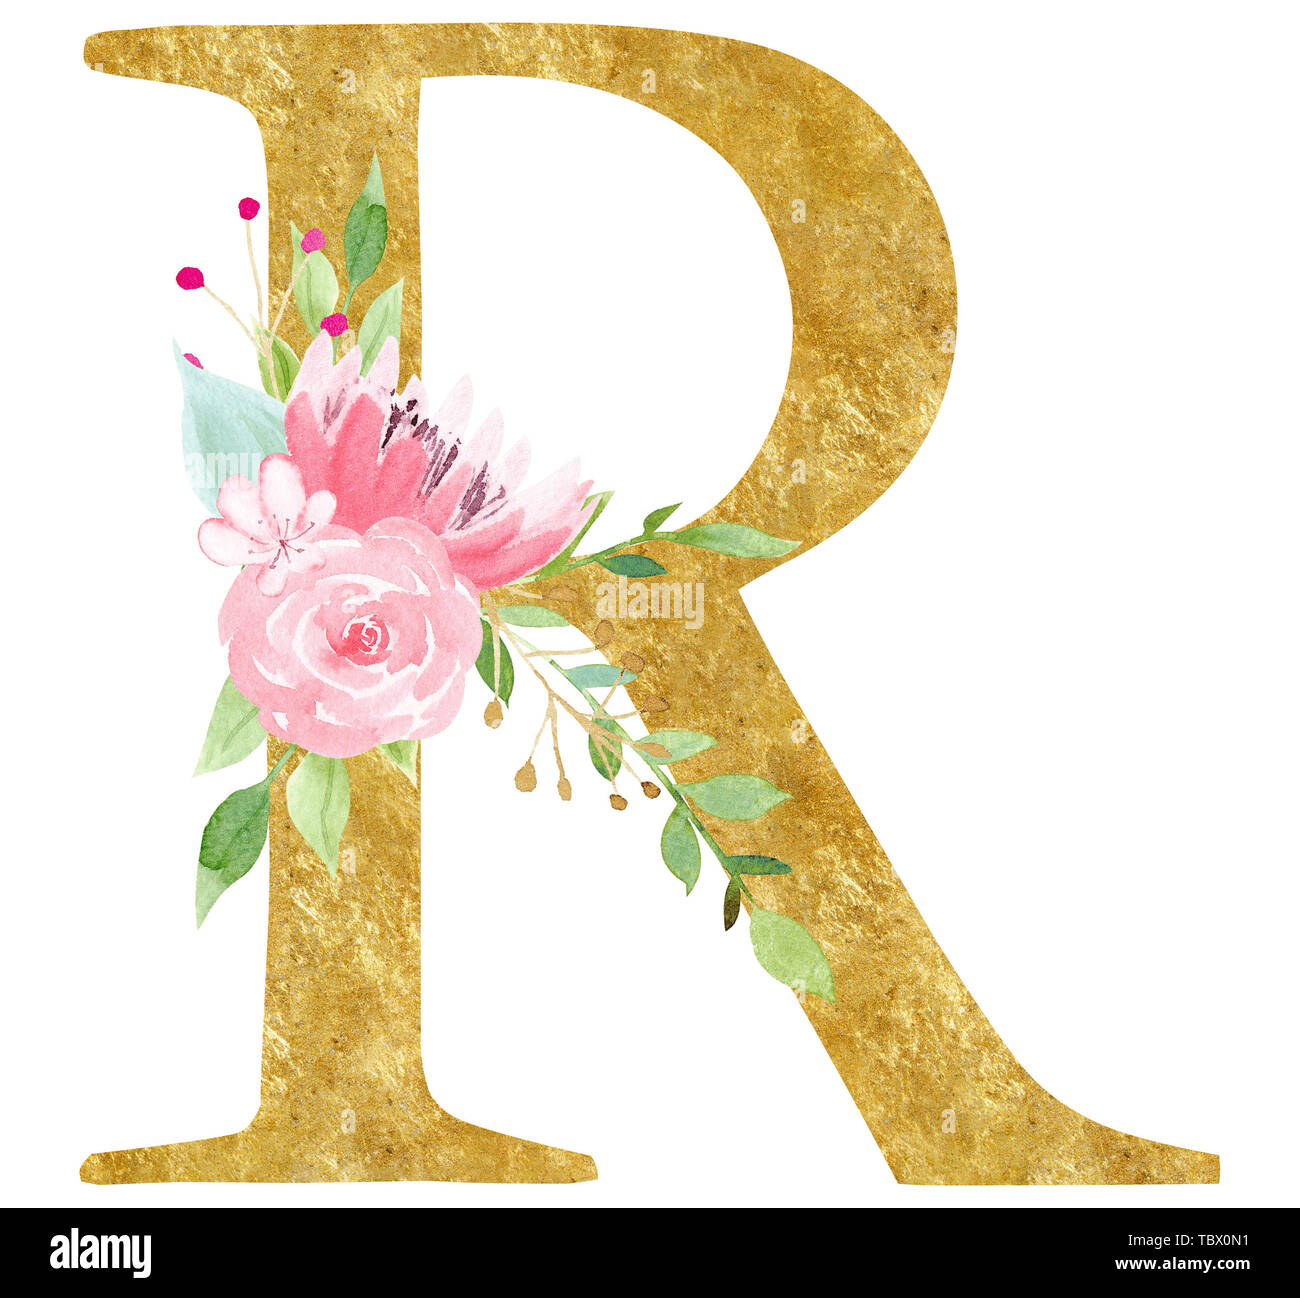 Letra R inicial con flor de ilustración raster. Signo del alfabeto latino  con flor rosa de acuarela. Elegante letras de cartón con golden t  Fotografía de stock - Alamy